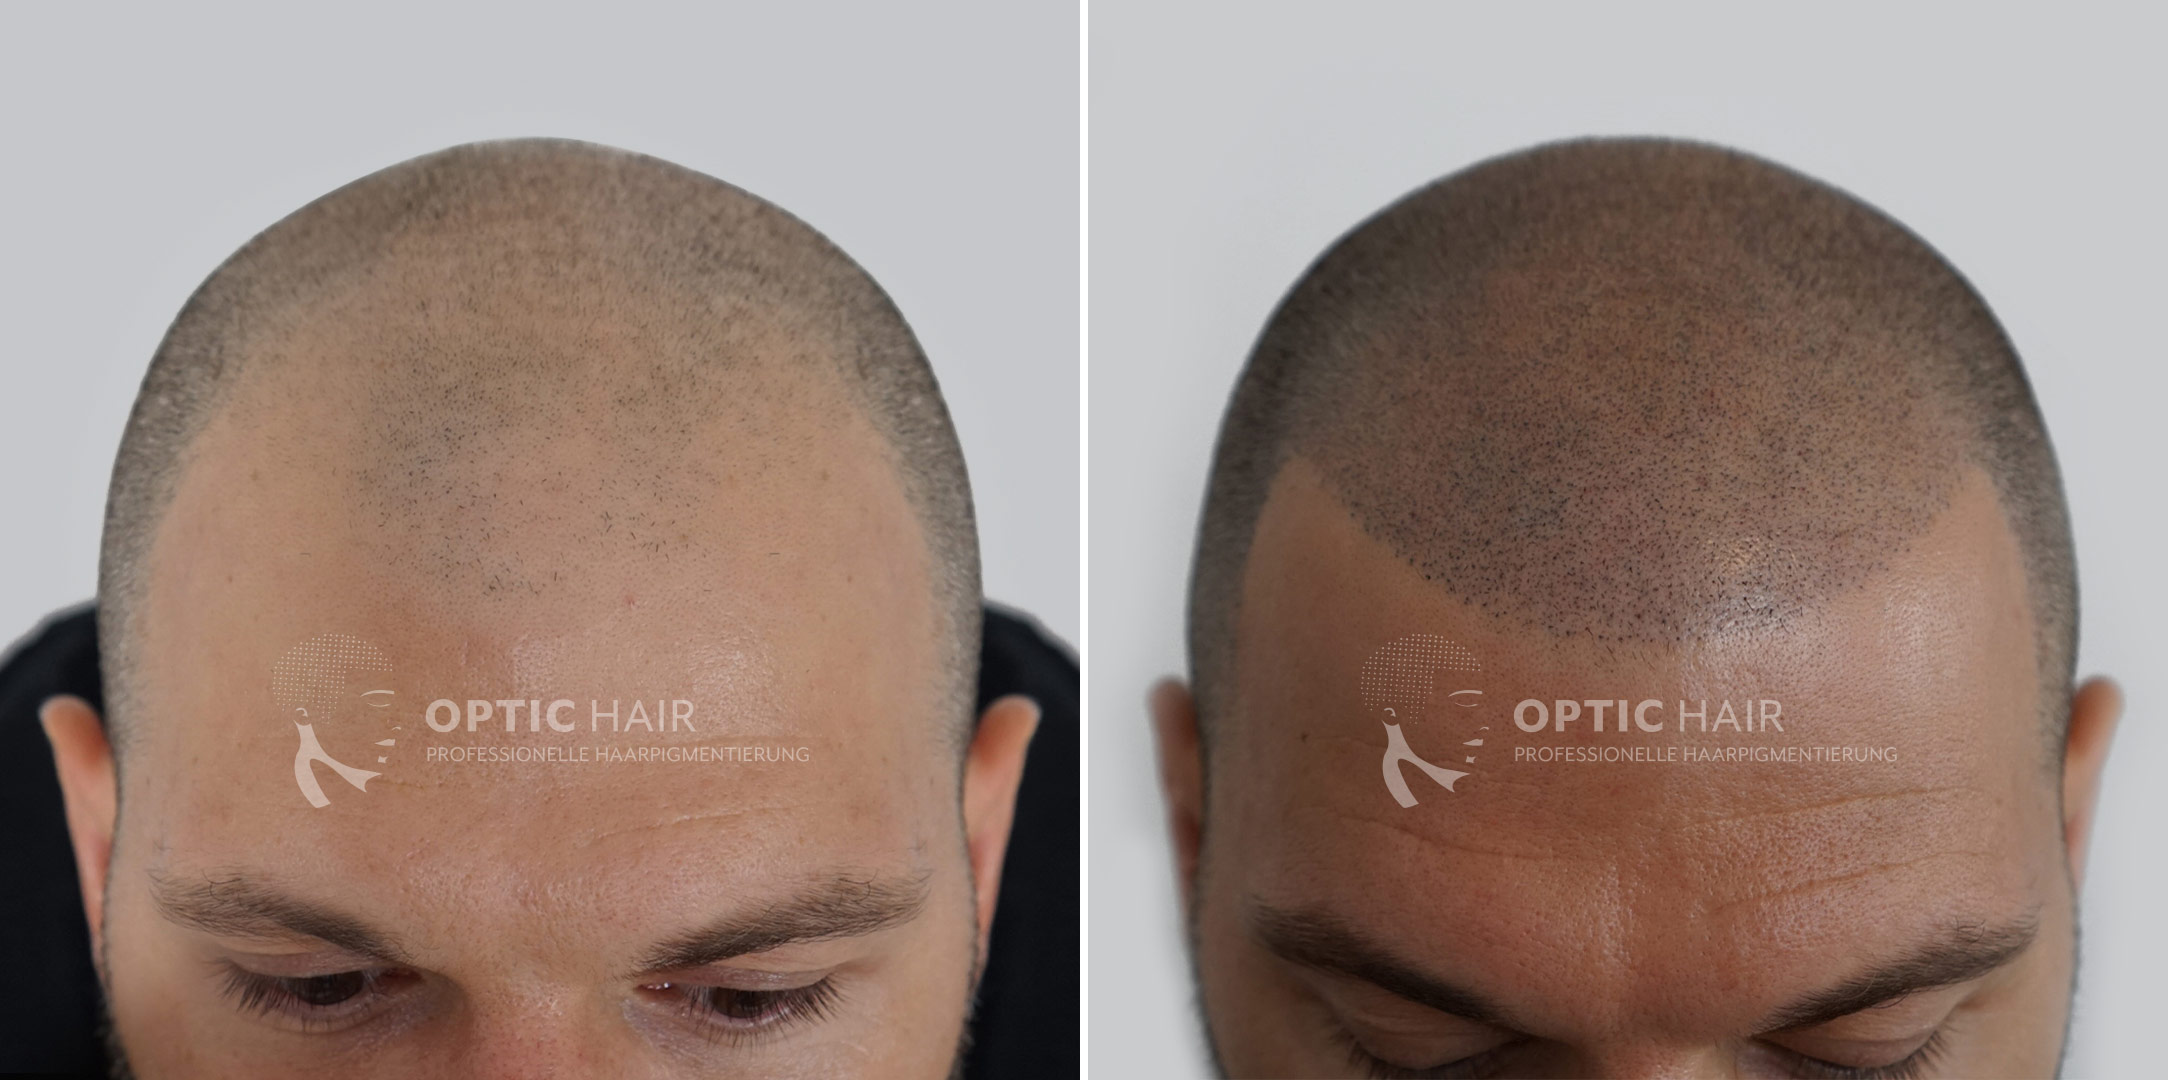 Ein neues Kapitel beginnt: Das bemerkenswerte Vorher-Nachher-Ergebnis einer Haarpigmentierung